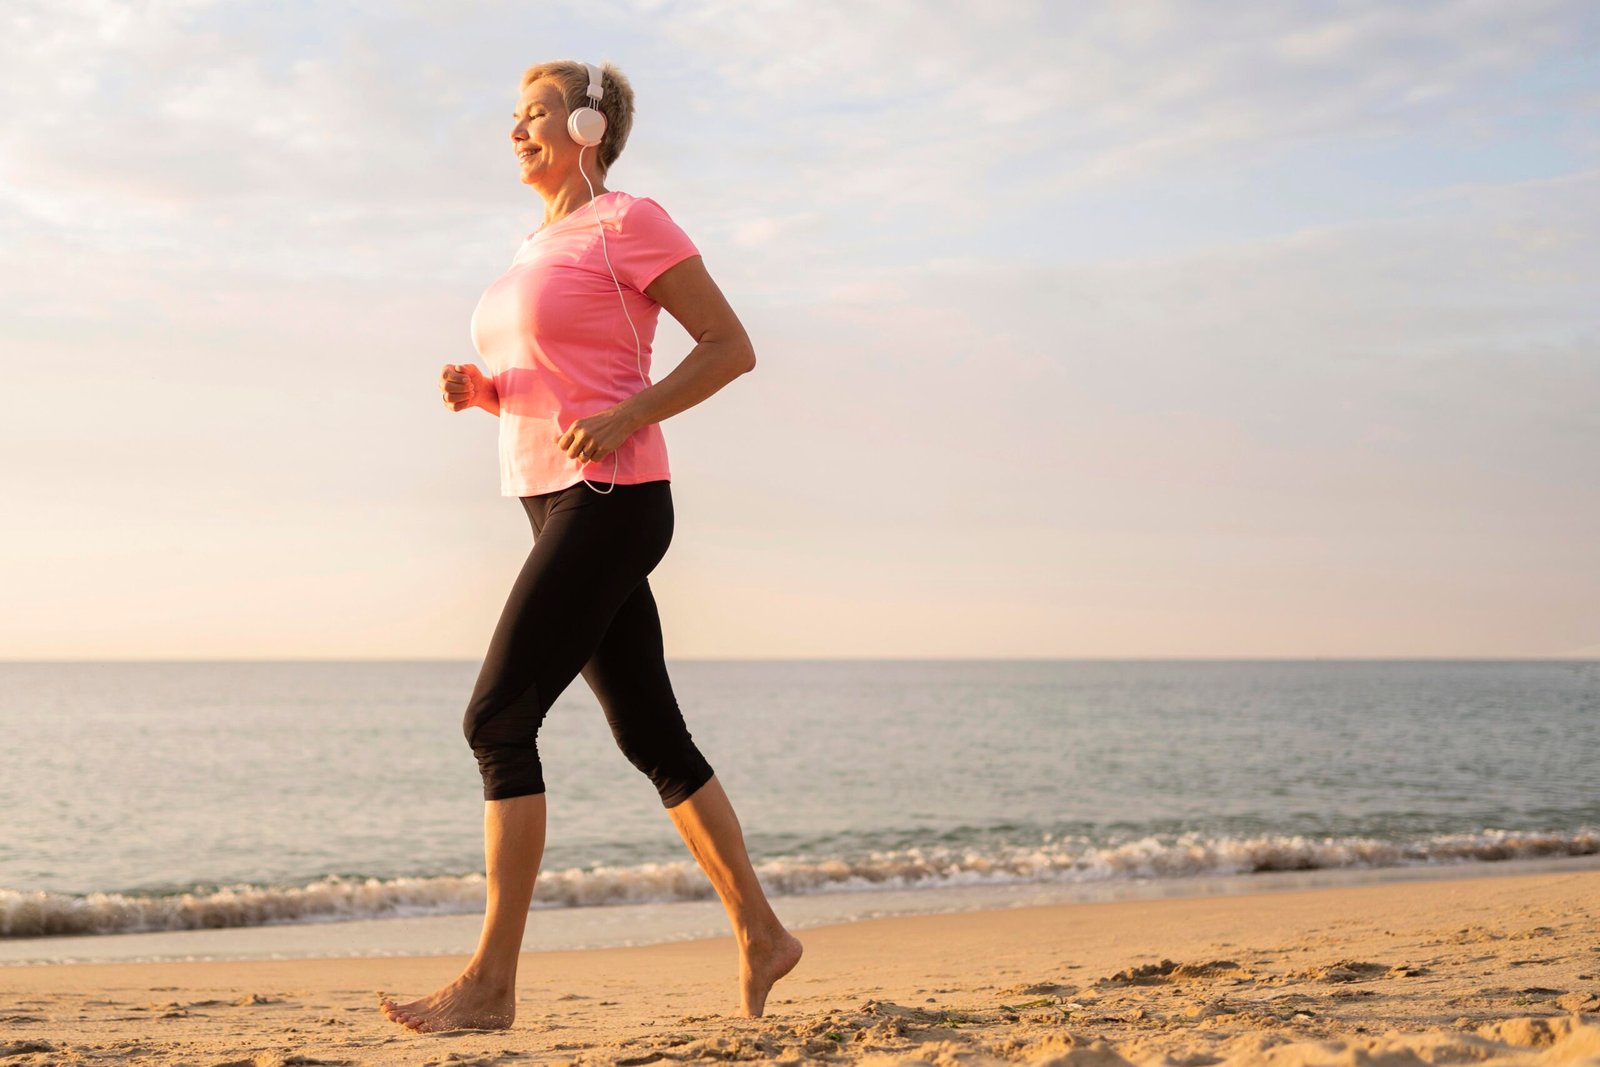 Fotografia de idosa caminhando na praia, com um fone de ouvido. A atividade física pode evitar inflamações como a sacroileíte.